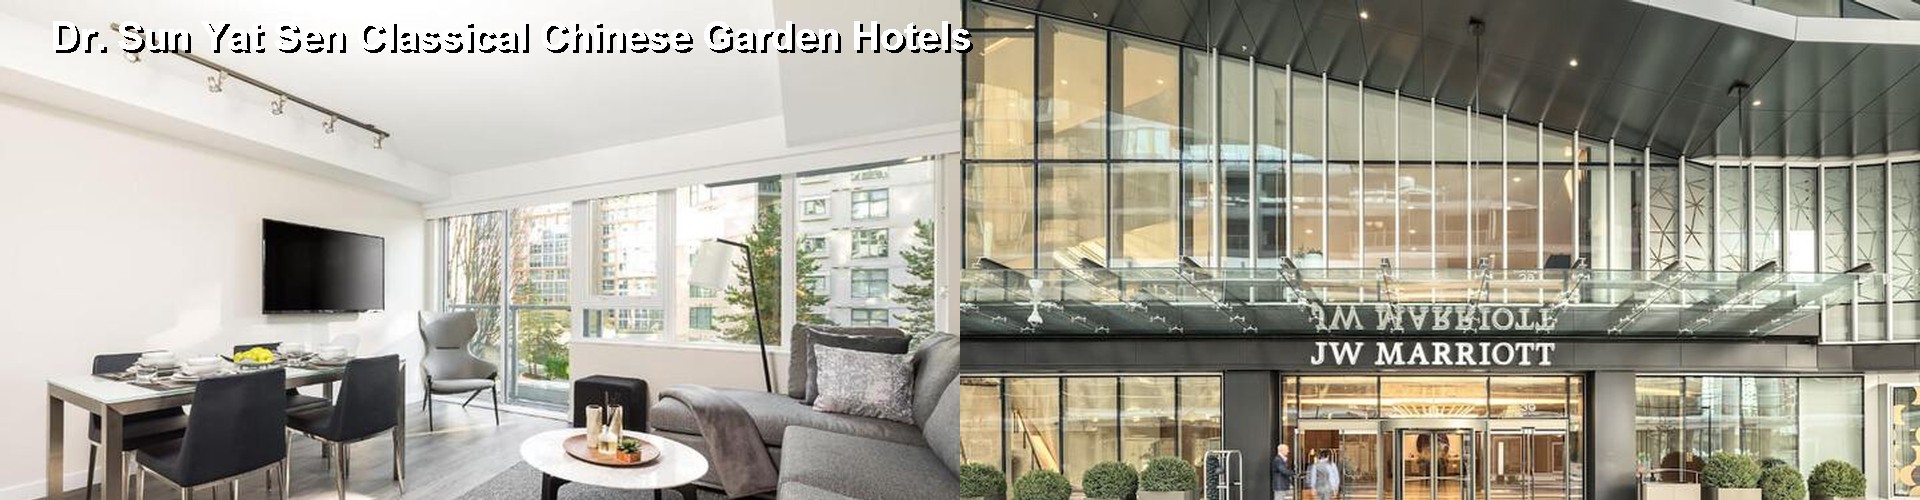 5 Best Hotels near Dr. Sun Yat Sen Classical Chinese Garden